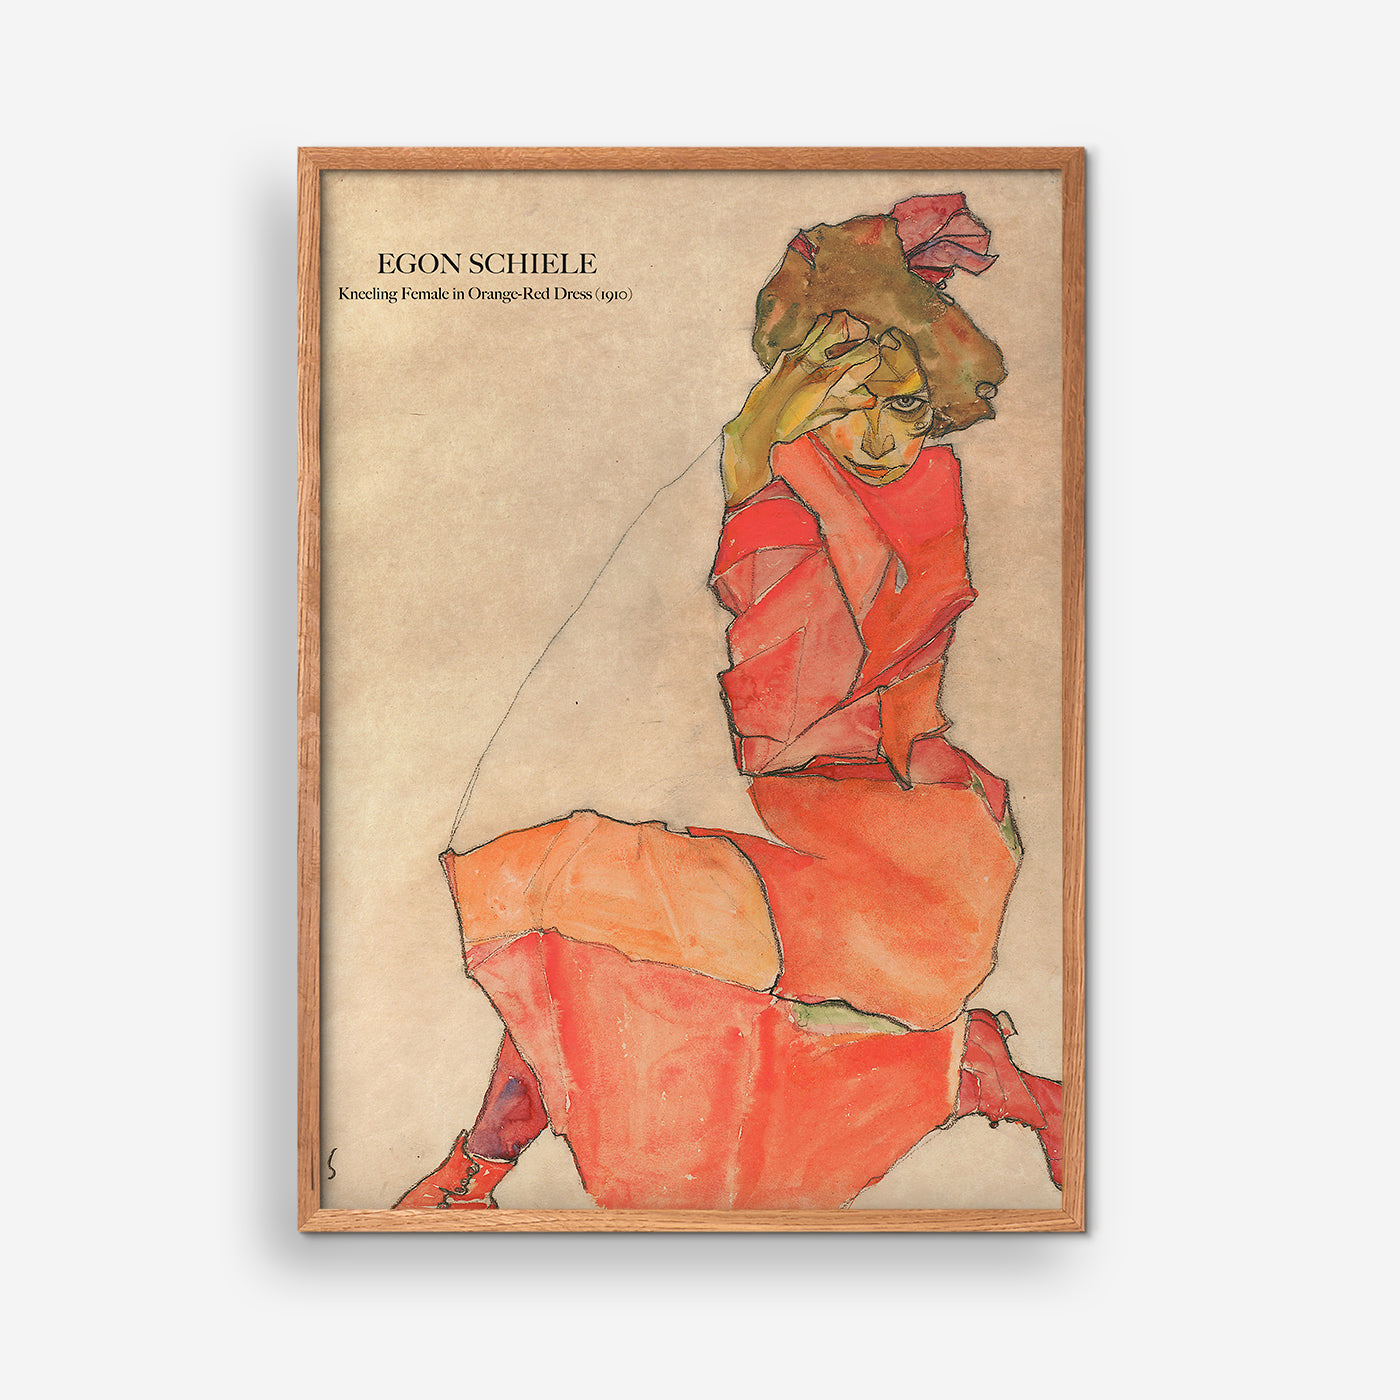 Kneeling Female in Orange-Red Dress - Egon Schiele